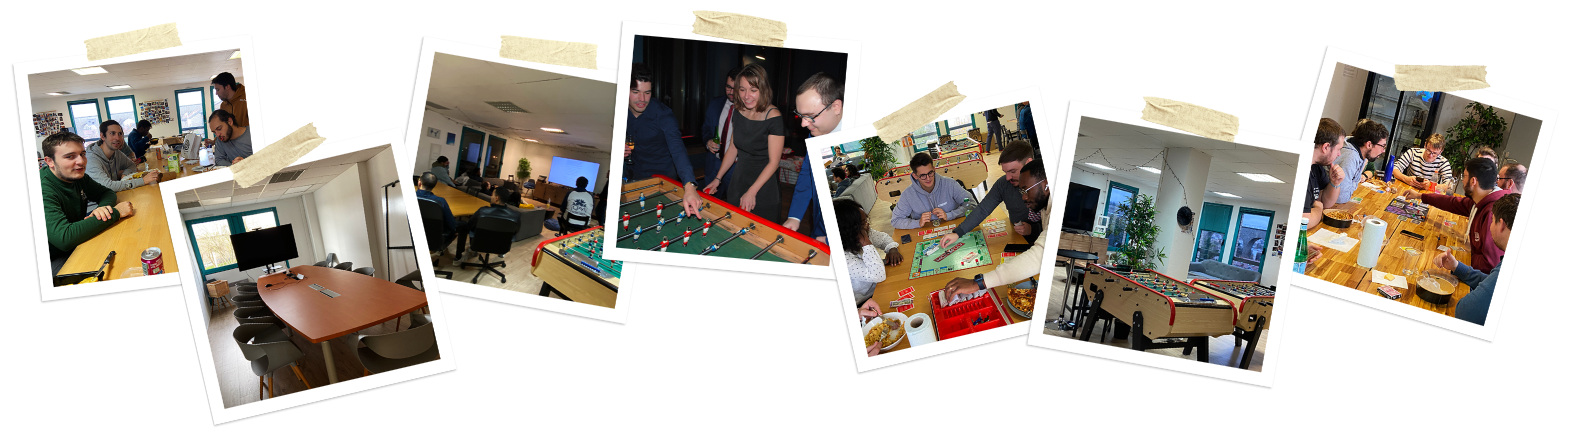 Collages de photos d'activités de l’équipe d’Oxyl, incluant des réunions de travail, jeux de baby-foot, jeux de société et repas d'équipe